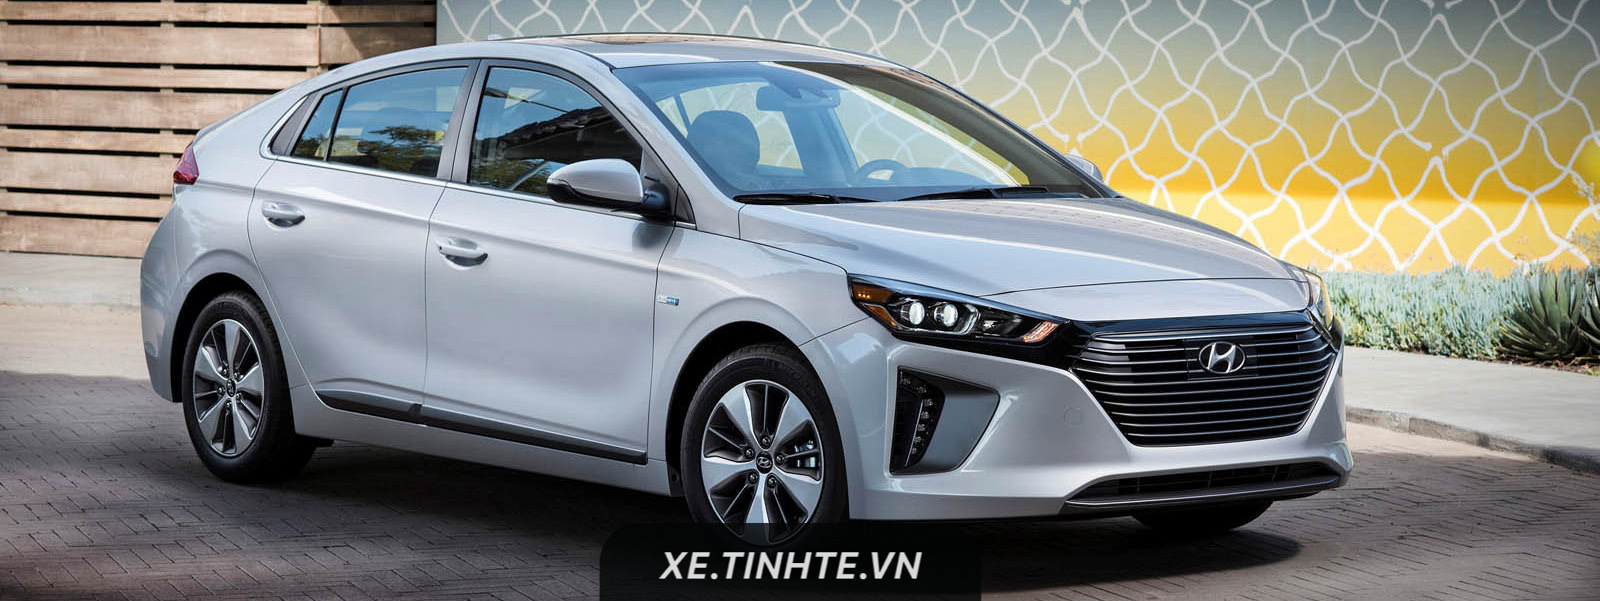 Hyundai giới thiệu Ioniq Plug-in Hybrid, xe lai xăng điện dạng cắm, 4,5 lít/100 km, giá 24.950 USD